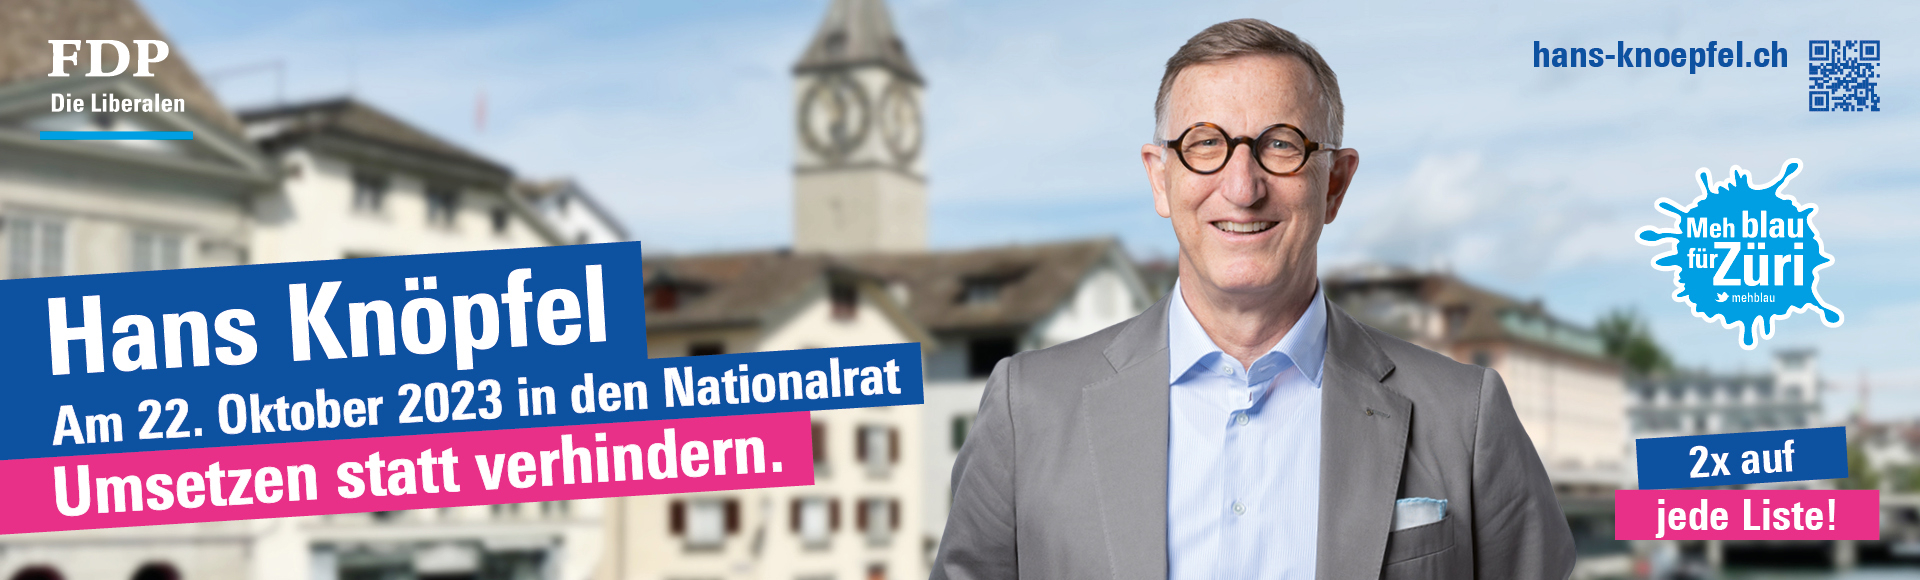 Ihr Kandidat für eine liberale, zukunftsgerichtete und erfolgreiche Schweiz